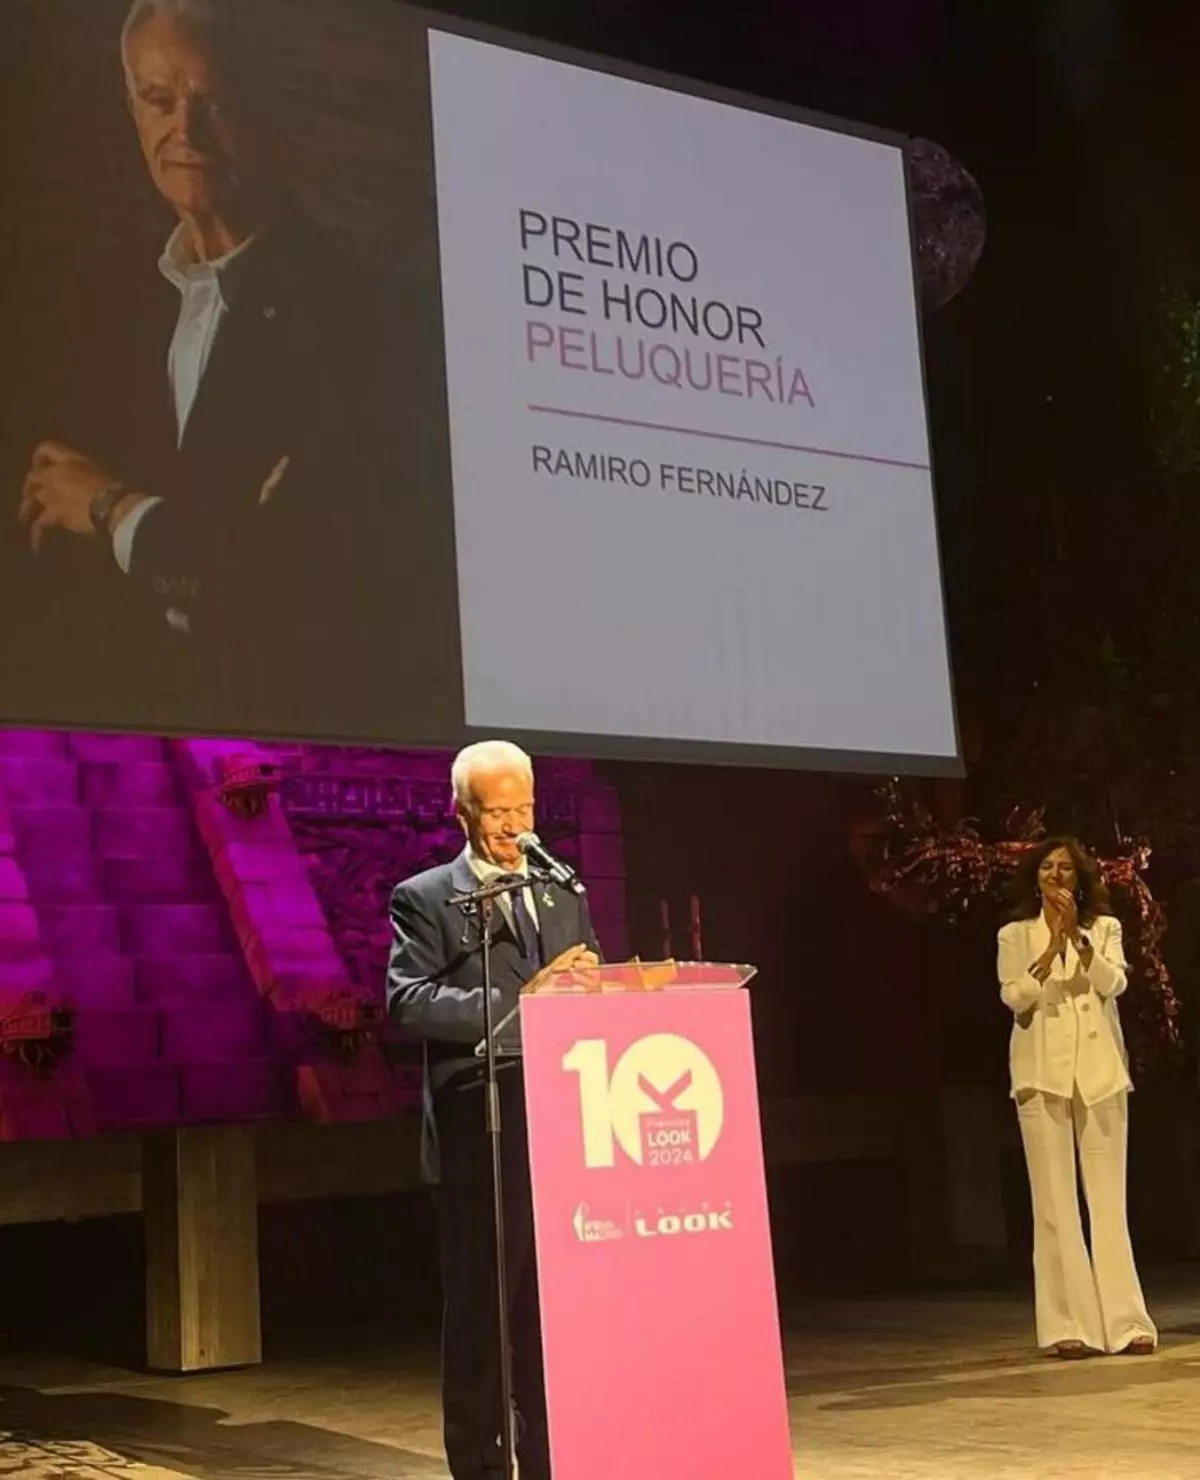 Oviedo triunfa por su estética: Ramiro Fernández recoge un premio por su carrera en la gala "Salón Look"